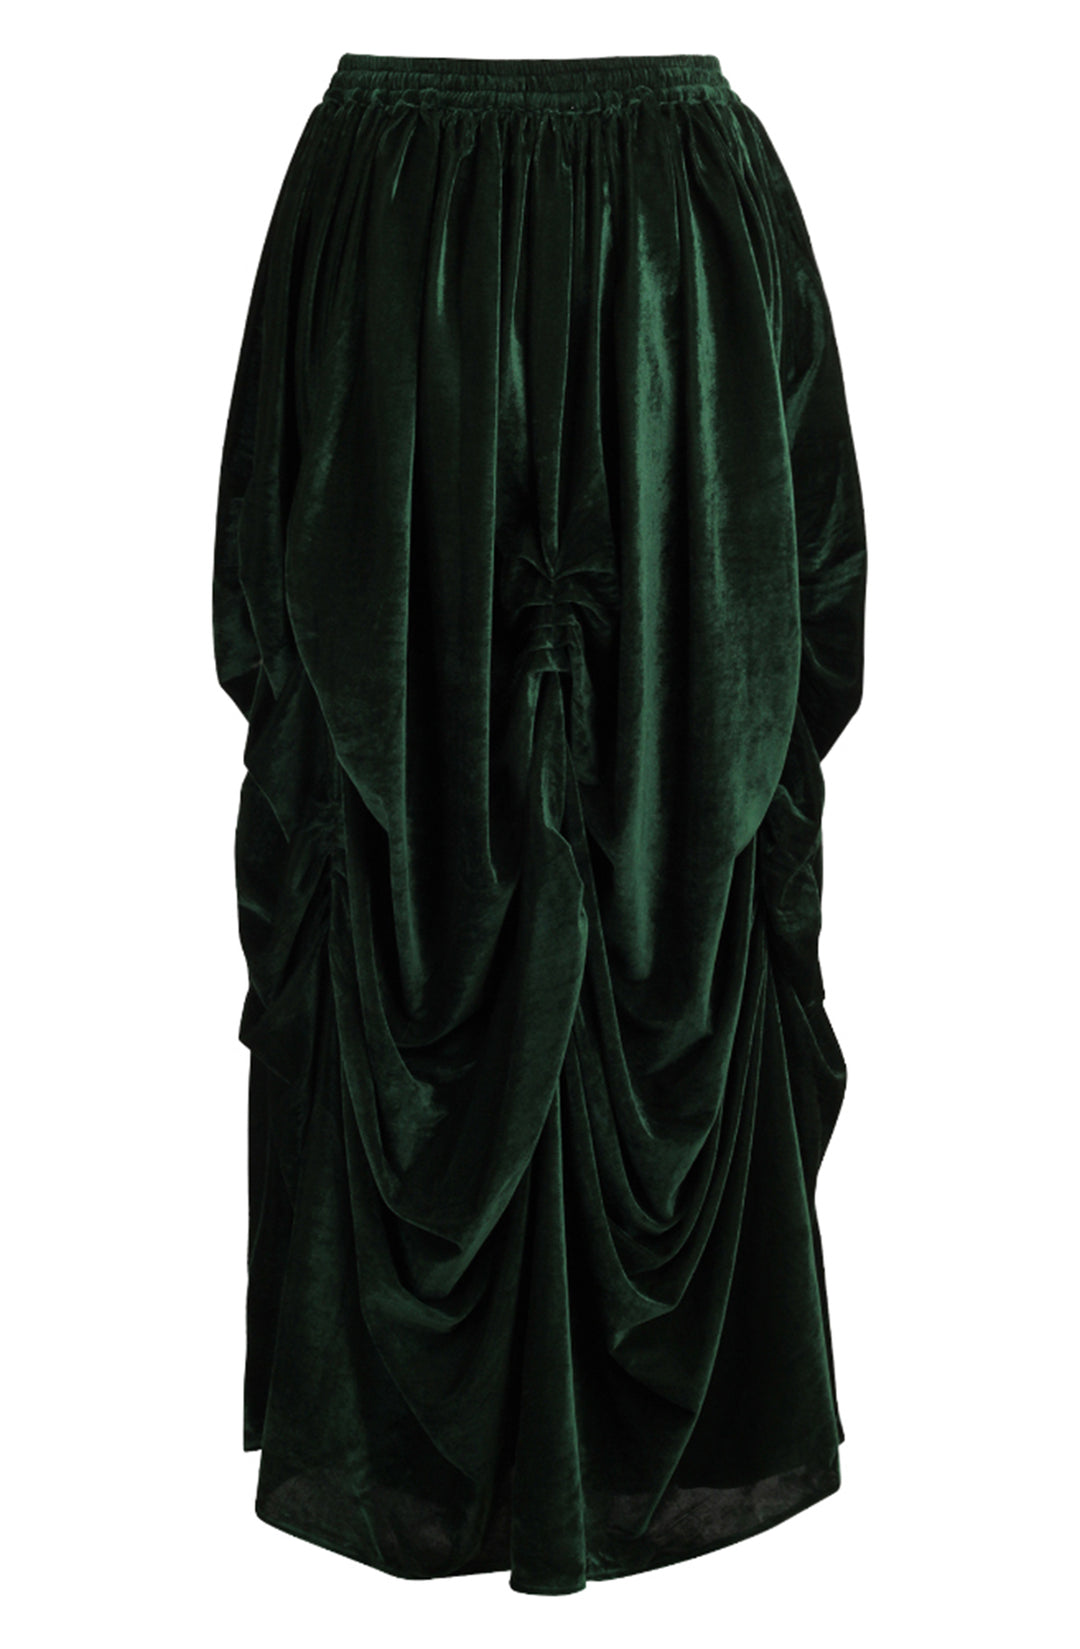 Emerald Green Velvet Ball Gown Skirt 2